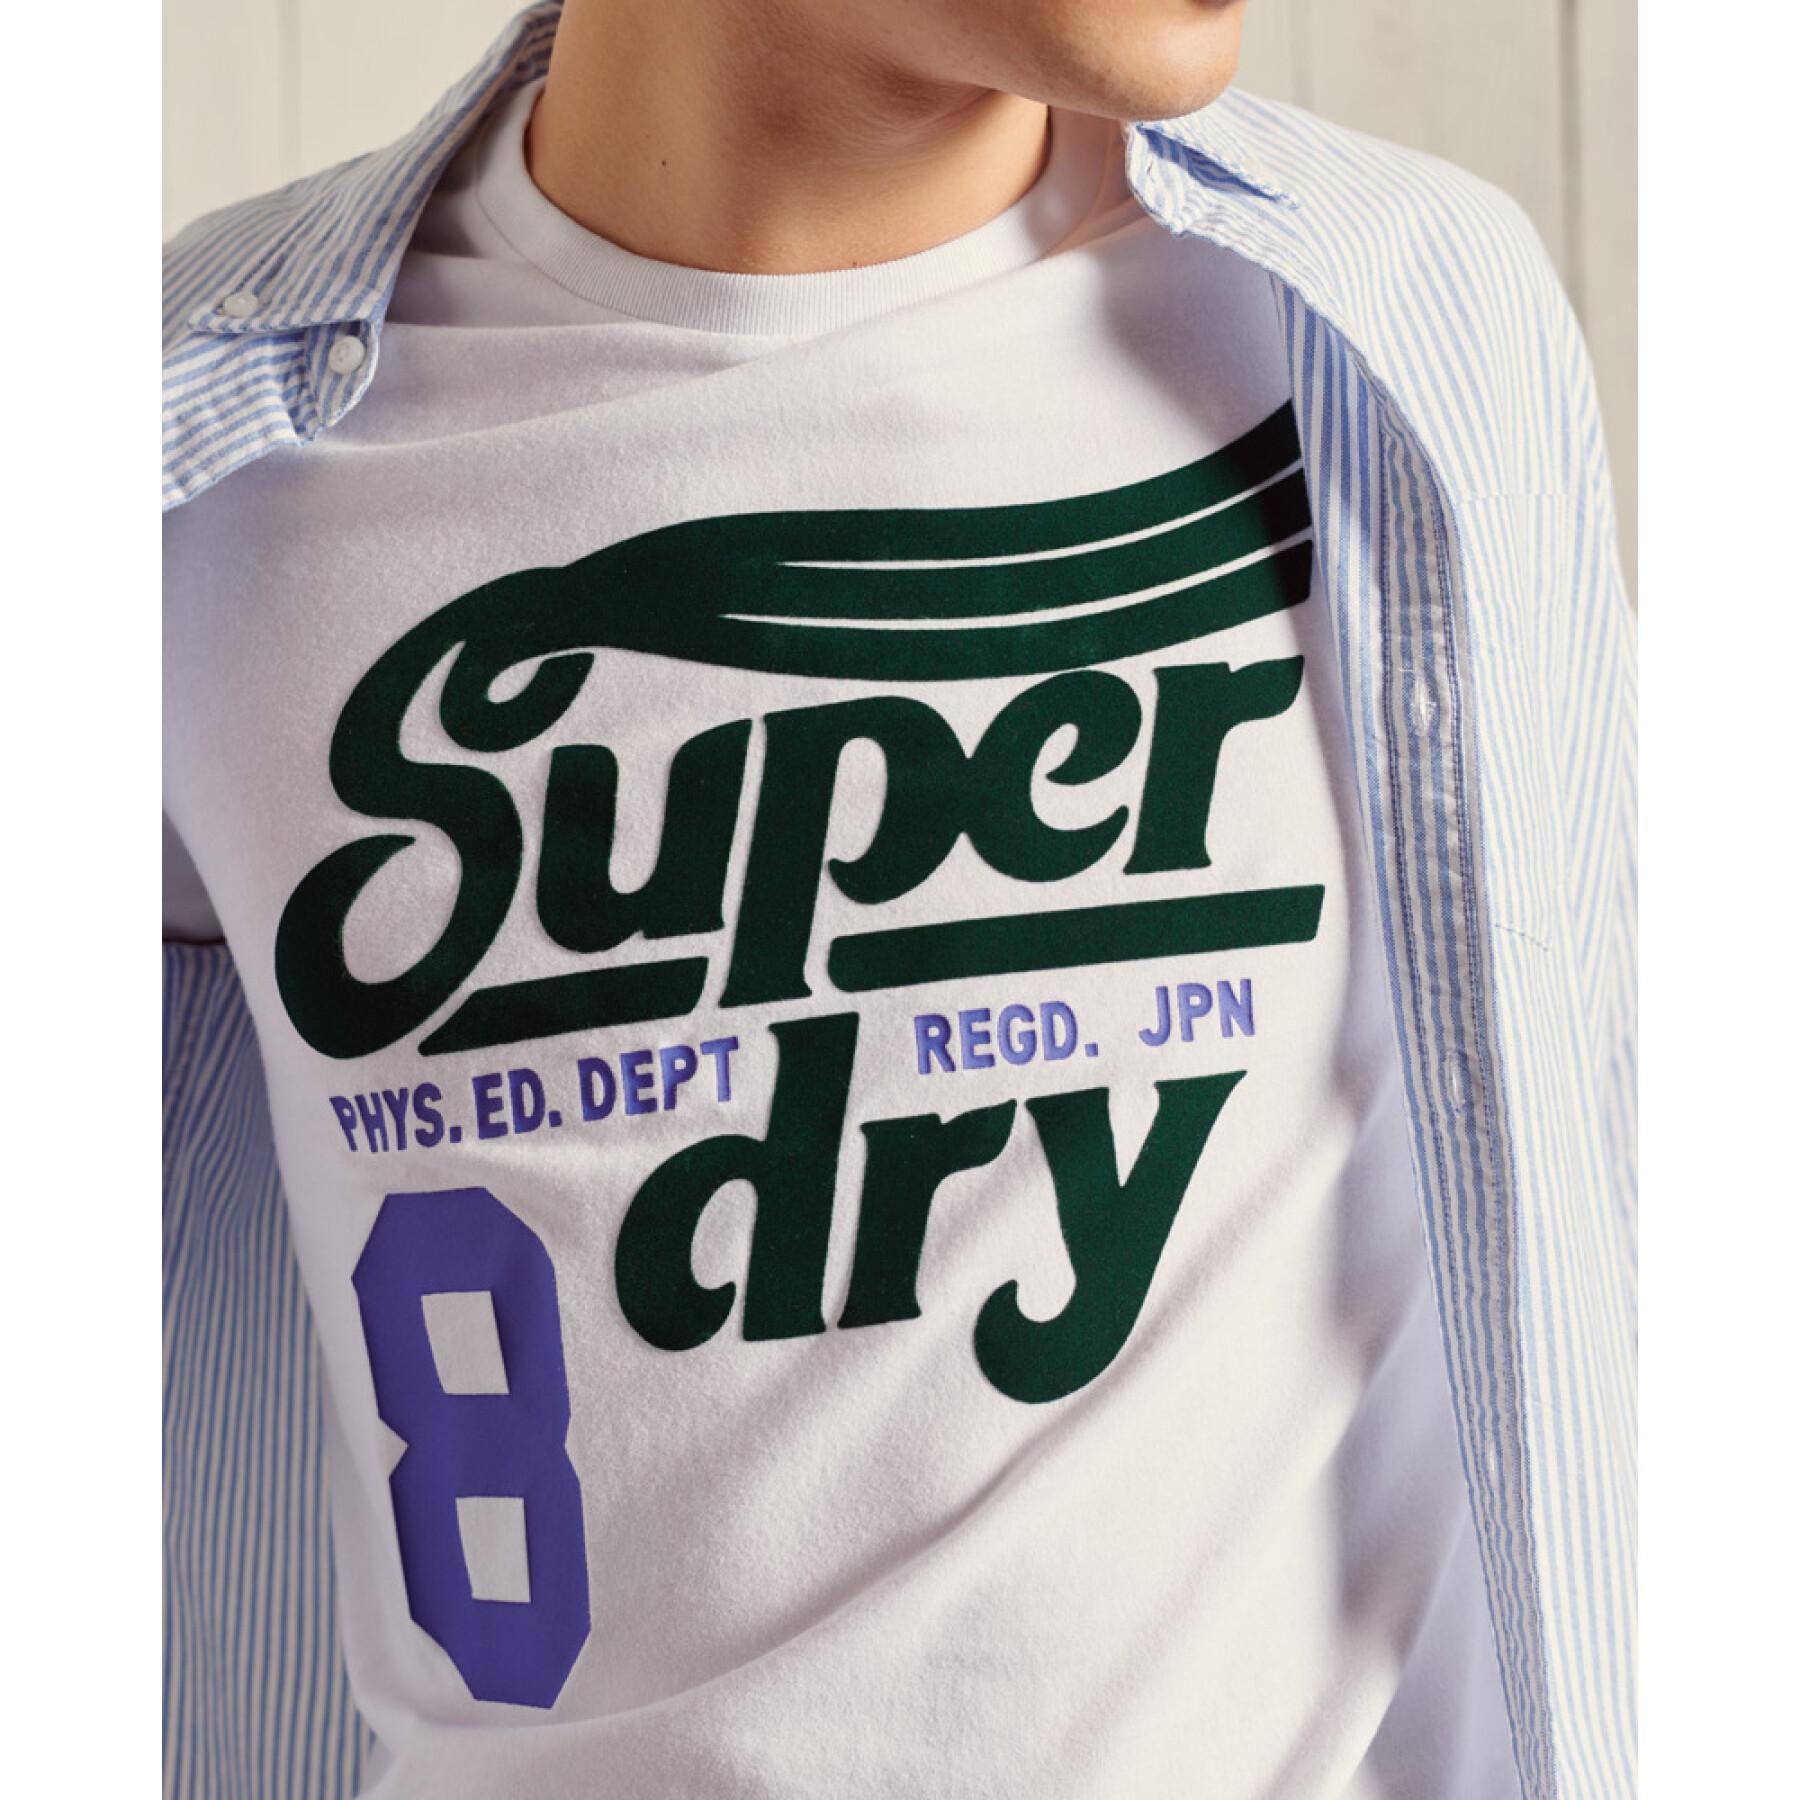 Camiseta ligera con estampado Superdry Collegiate